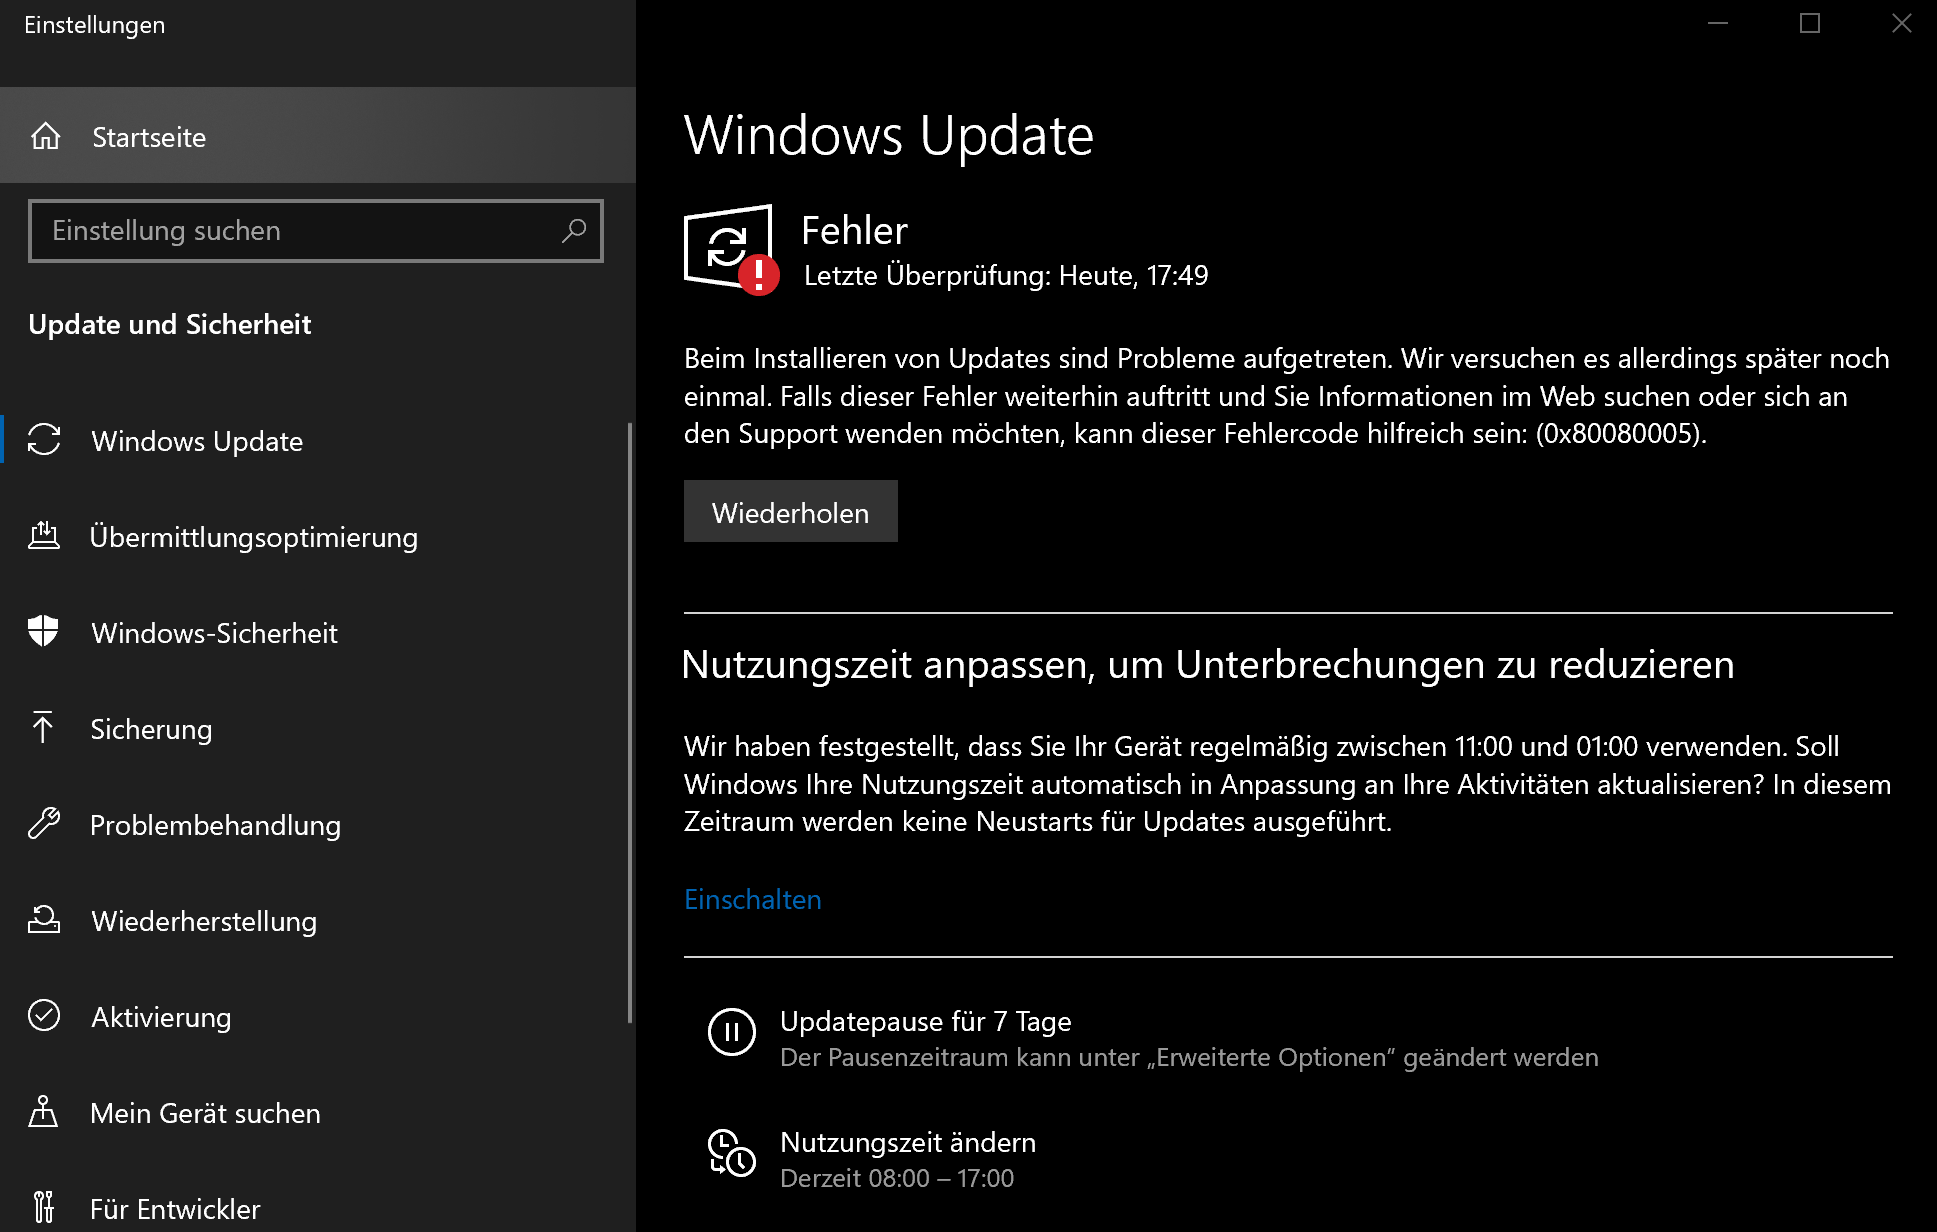 Windows Defender und Updates funktionieren nicht richtig außerdem befindet sich kein Icon...